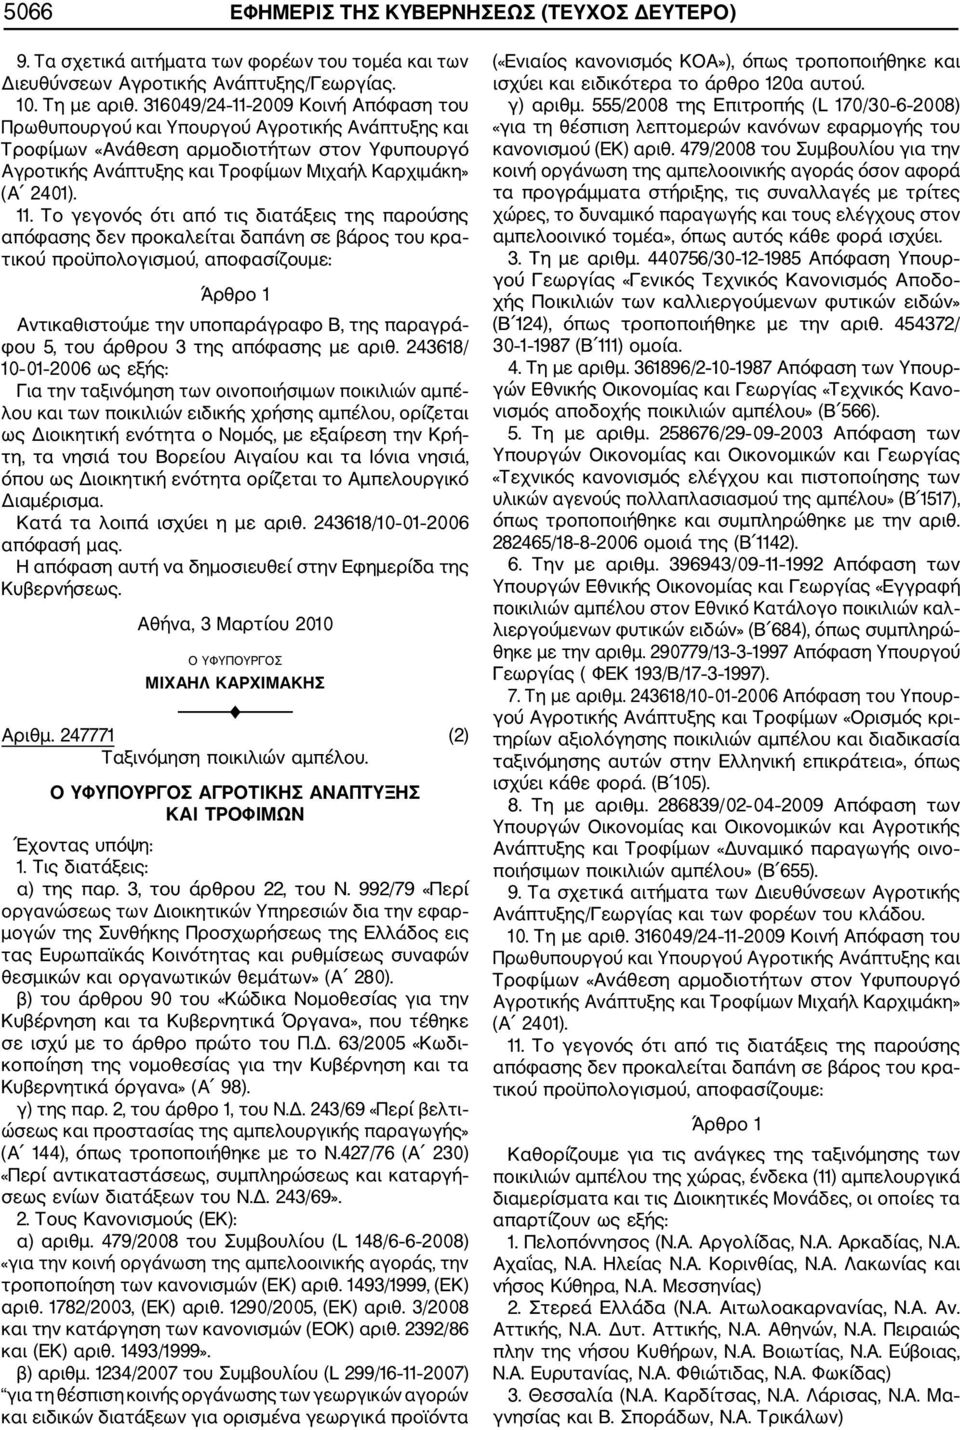 2009 Κοινή Απόφαση του Πρωθυπουργού και Υπουργού Αγροτικής Ανάπτυξης και Τροφίμων «Ανάθεση αρμοδιοτήτων στον Υφυπουργό Αγροτικής Ανάπτυξης και Τροφίμων Μιχαήλ Καρχιμάκη» (Α 2401). 11.